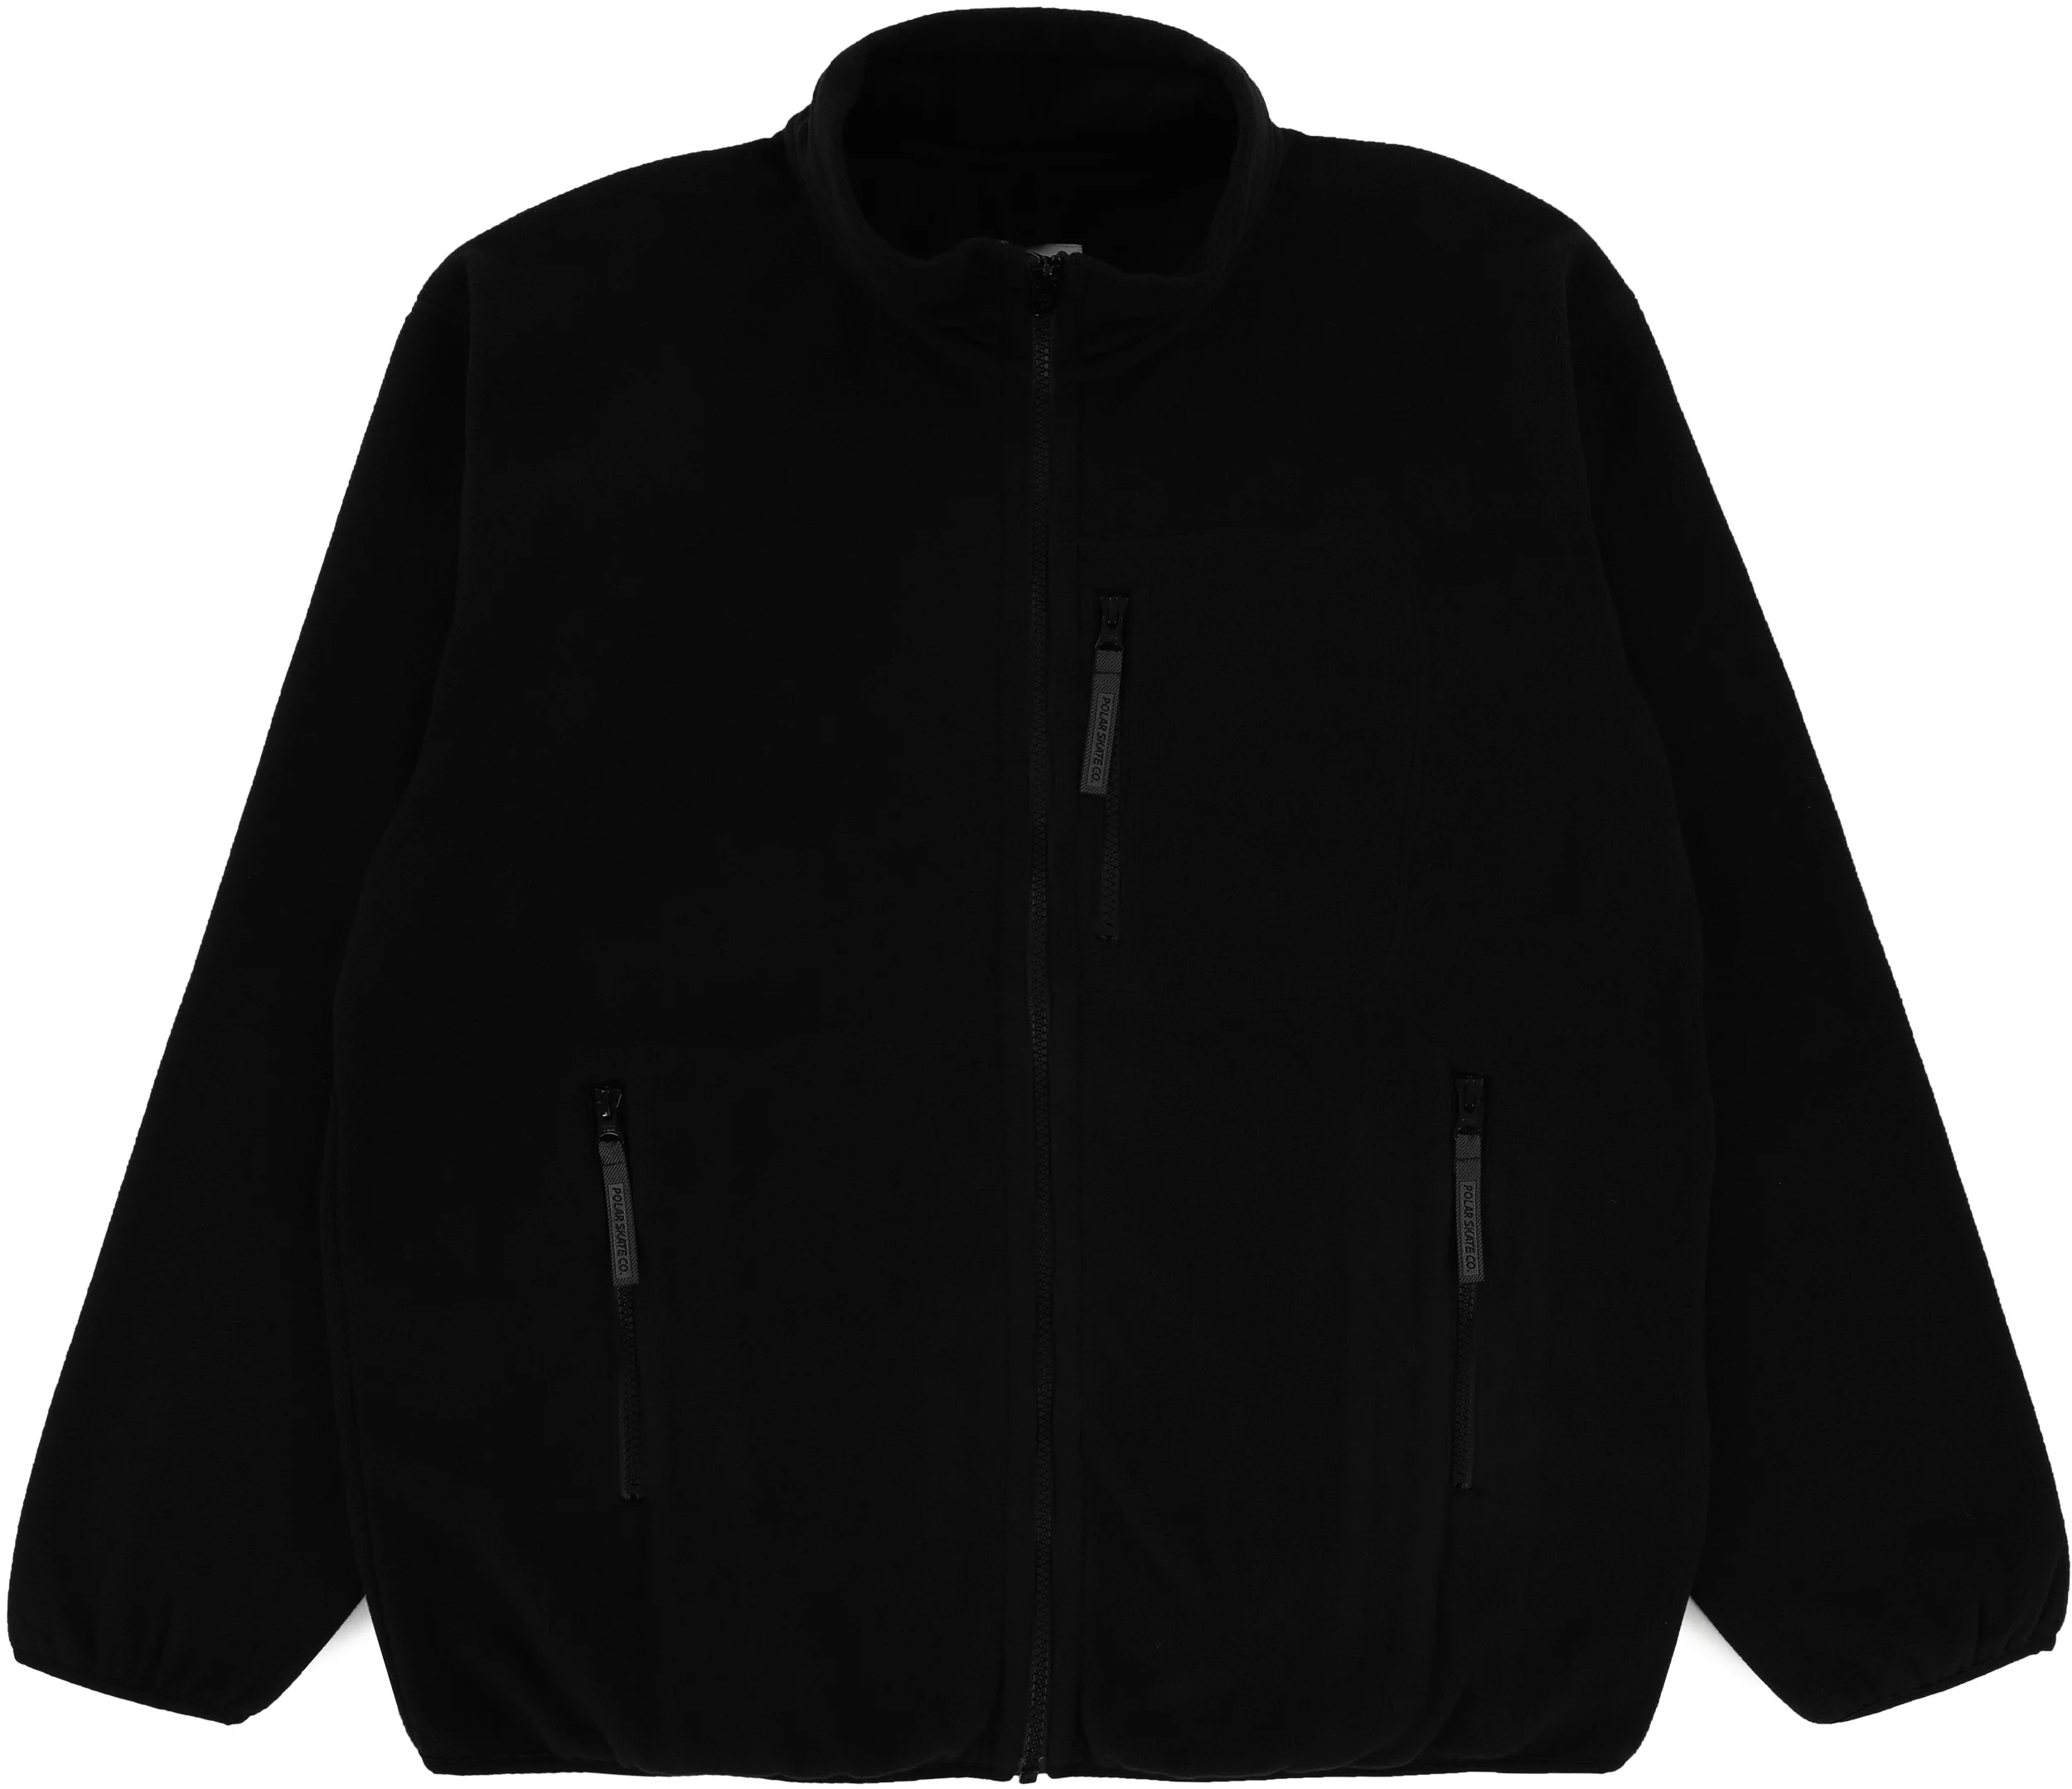 Basic Fleece Jacket